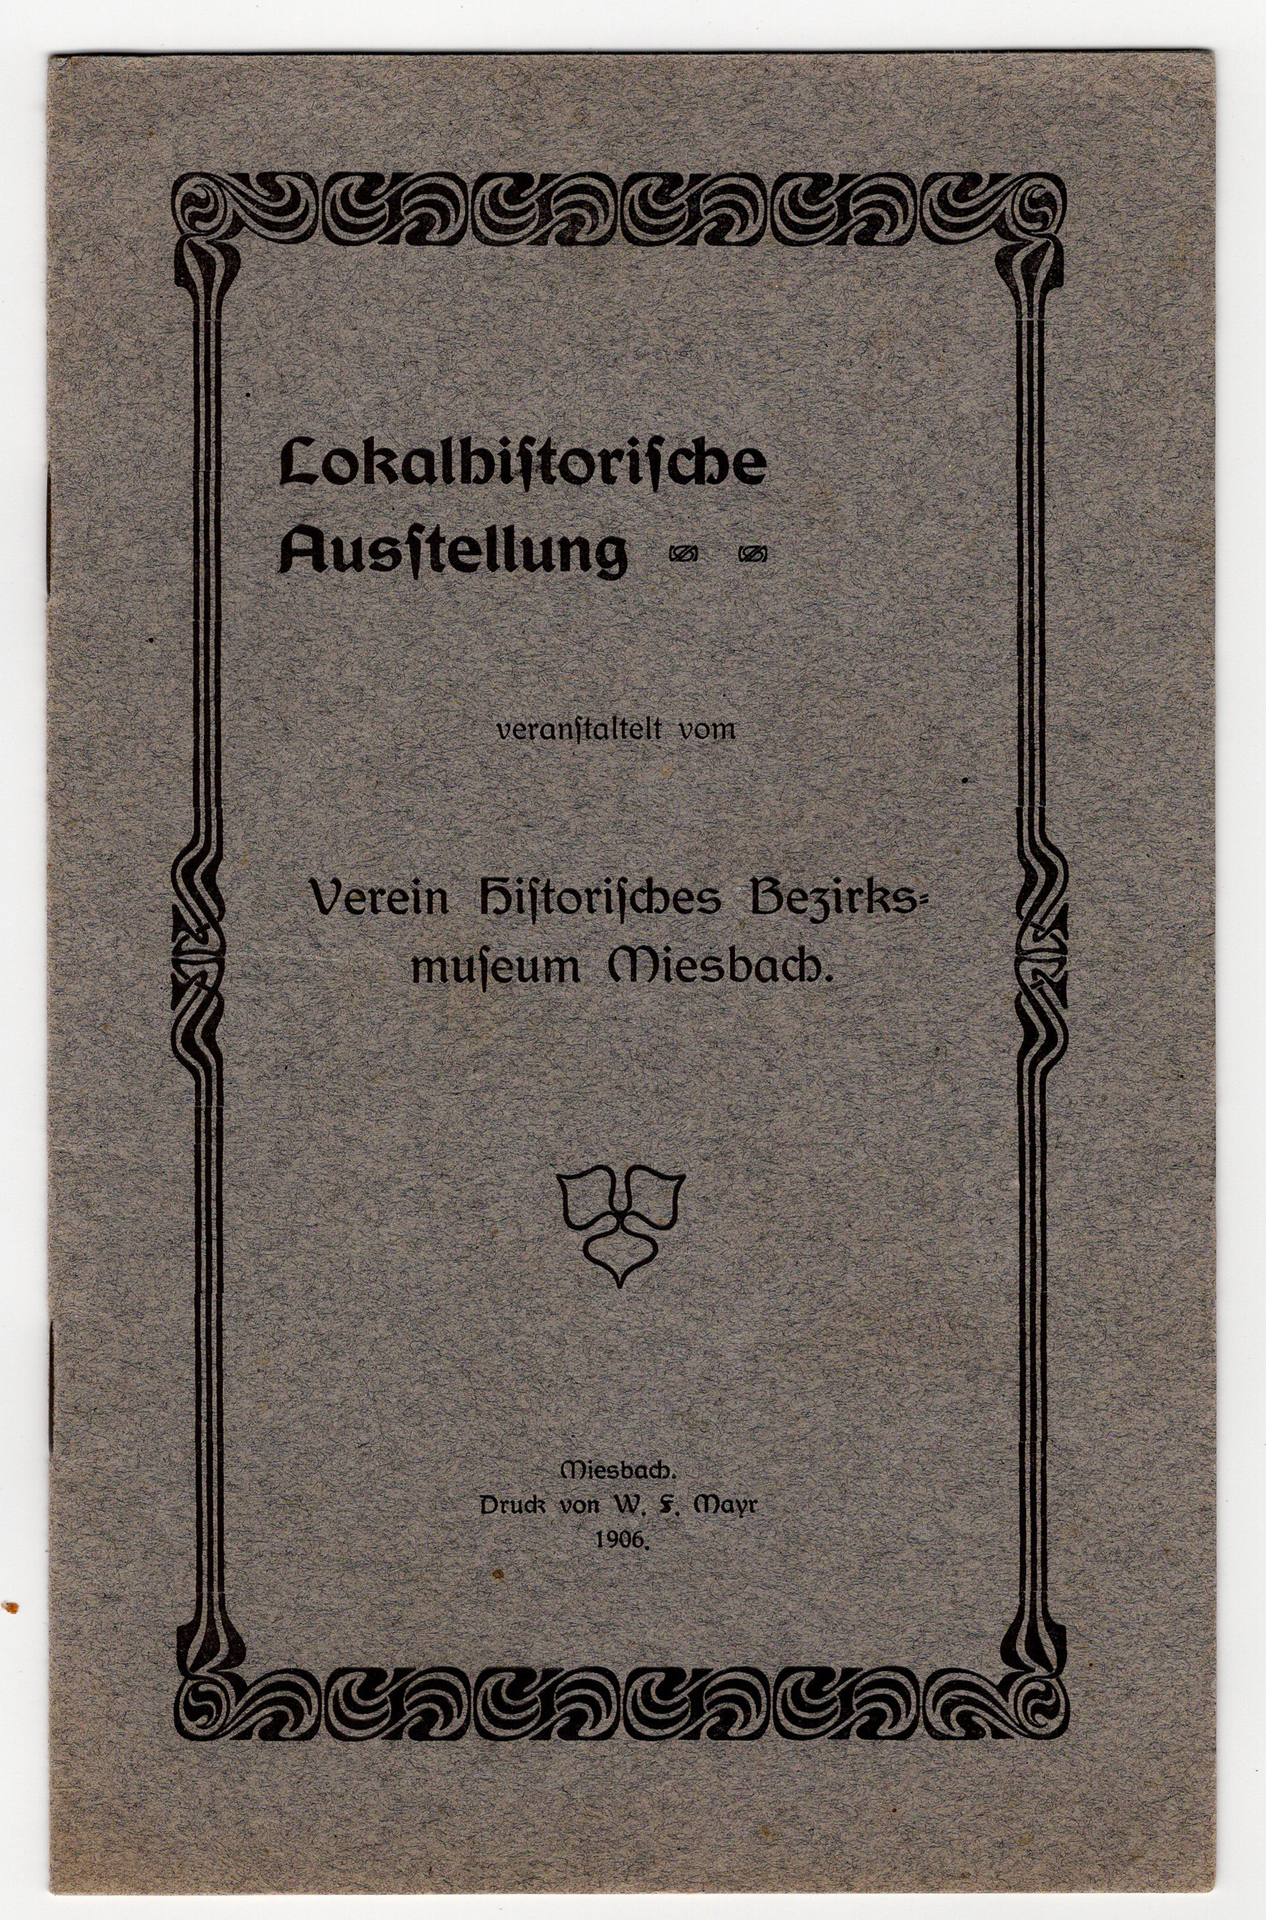 06 Lokalhistorische Ausstellung 1906 (1).jpg